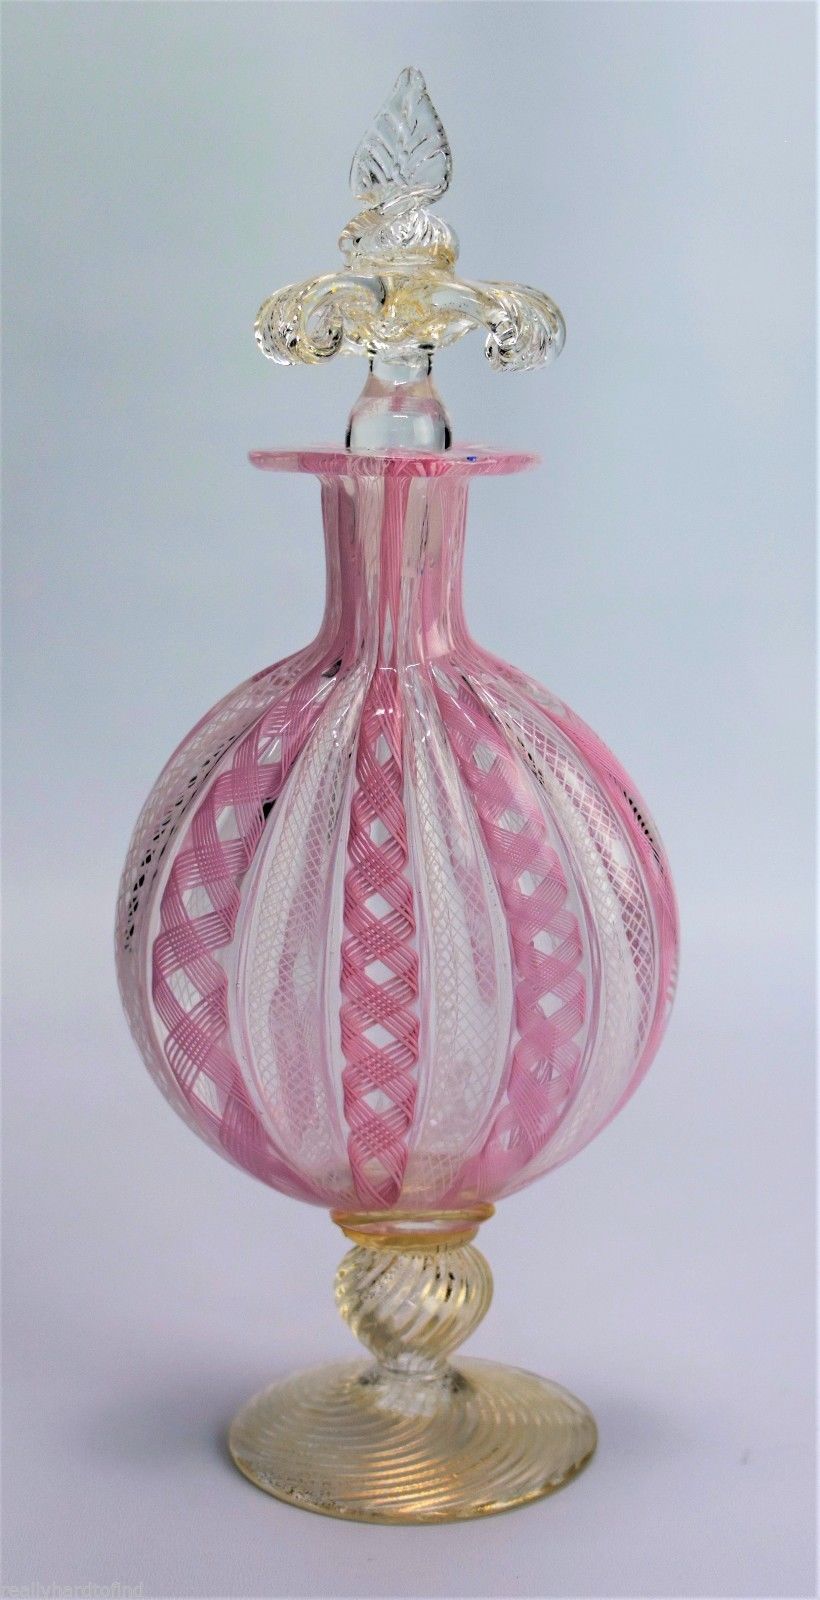 ベネチアングラス・ムラノガラス-ラティチーノ (Latticino)技法を使った香水瓶